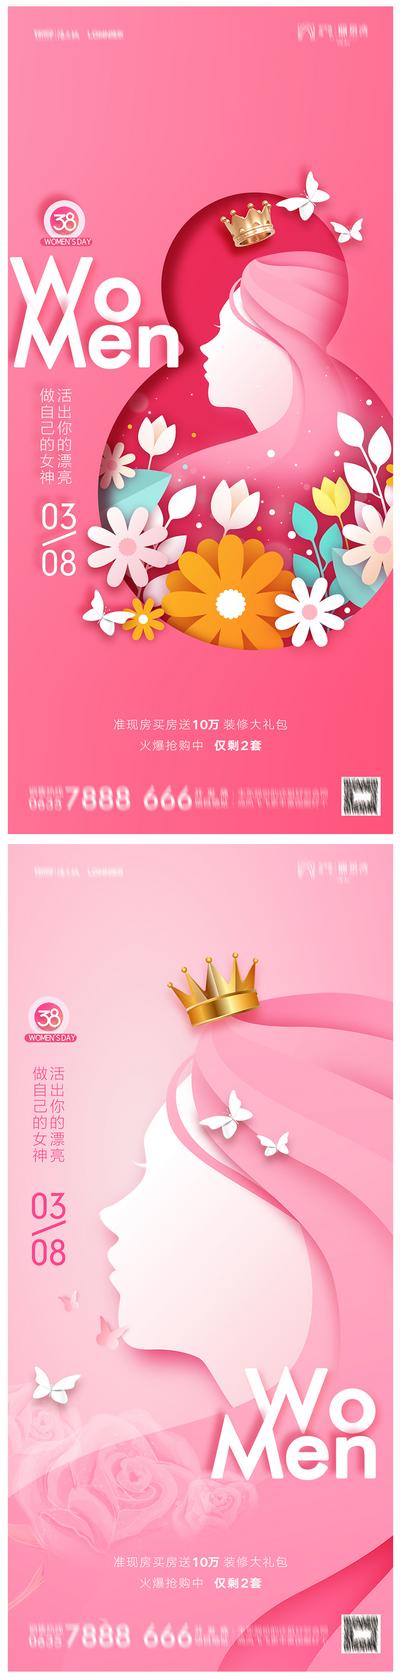 南门网 海报 地产 公历节日 38妇女节 女神节 皇冠